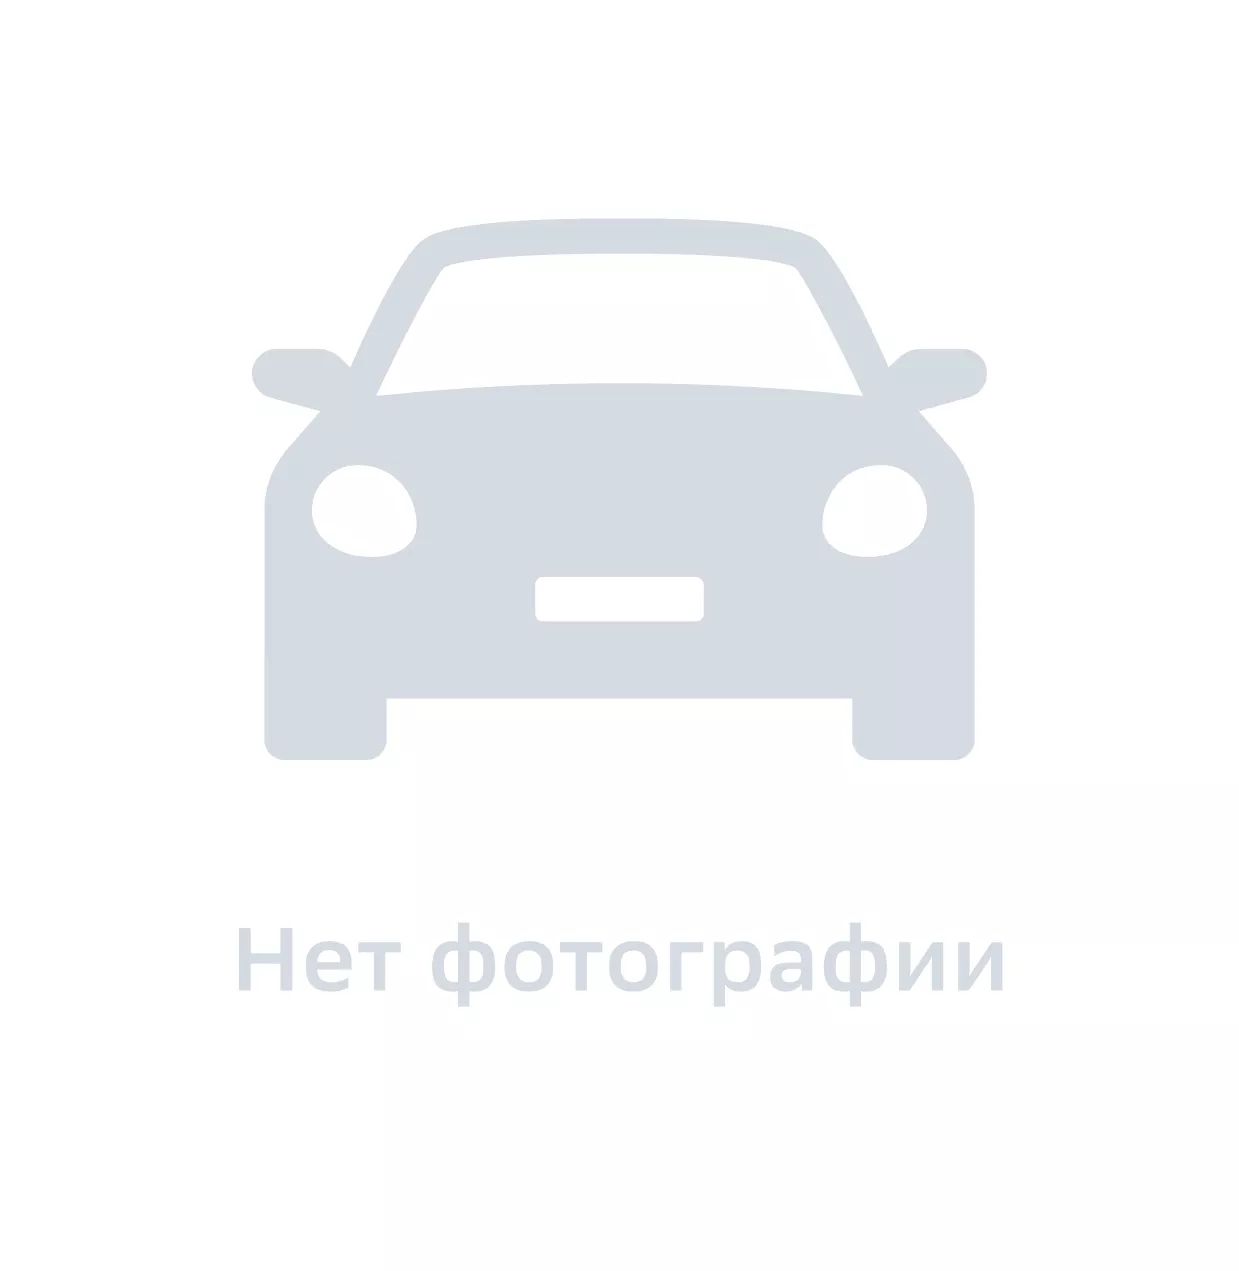 Трос стояночного тормоза, Ukorauto, UHD2H593407, цена за 1 шт.